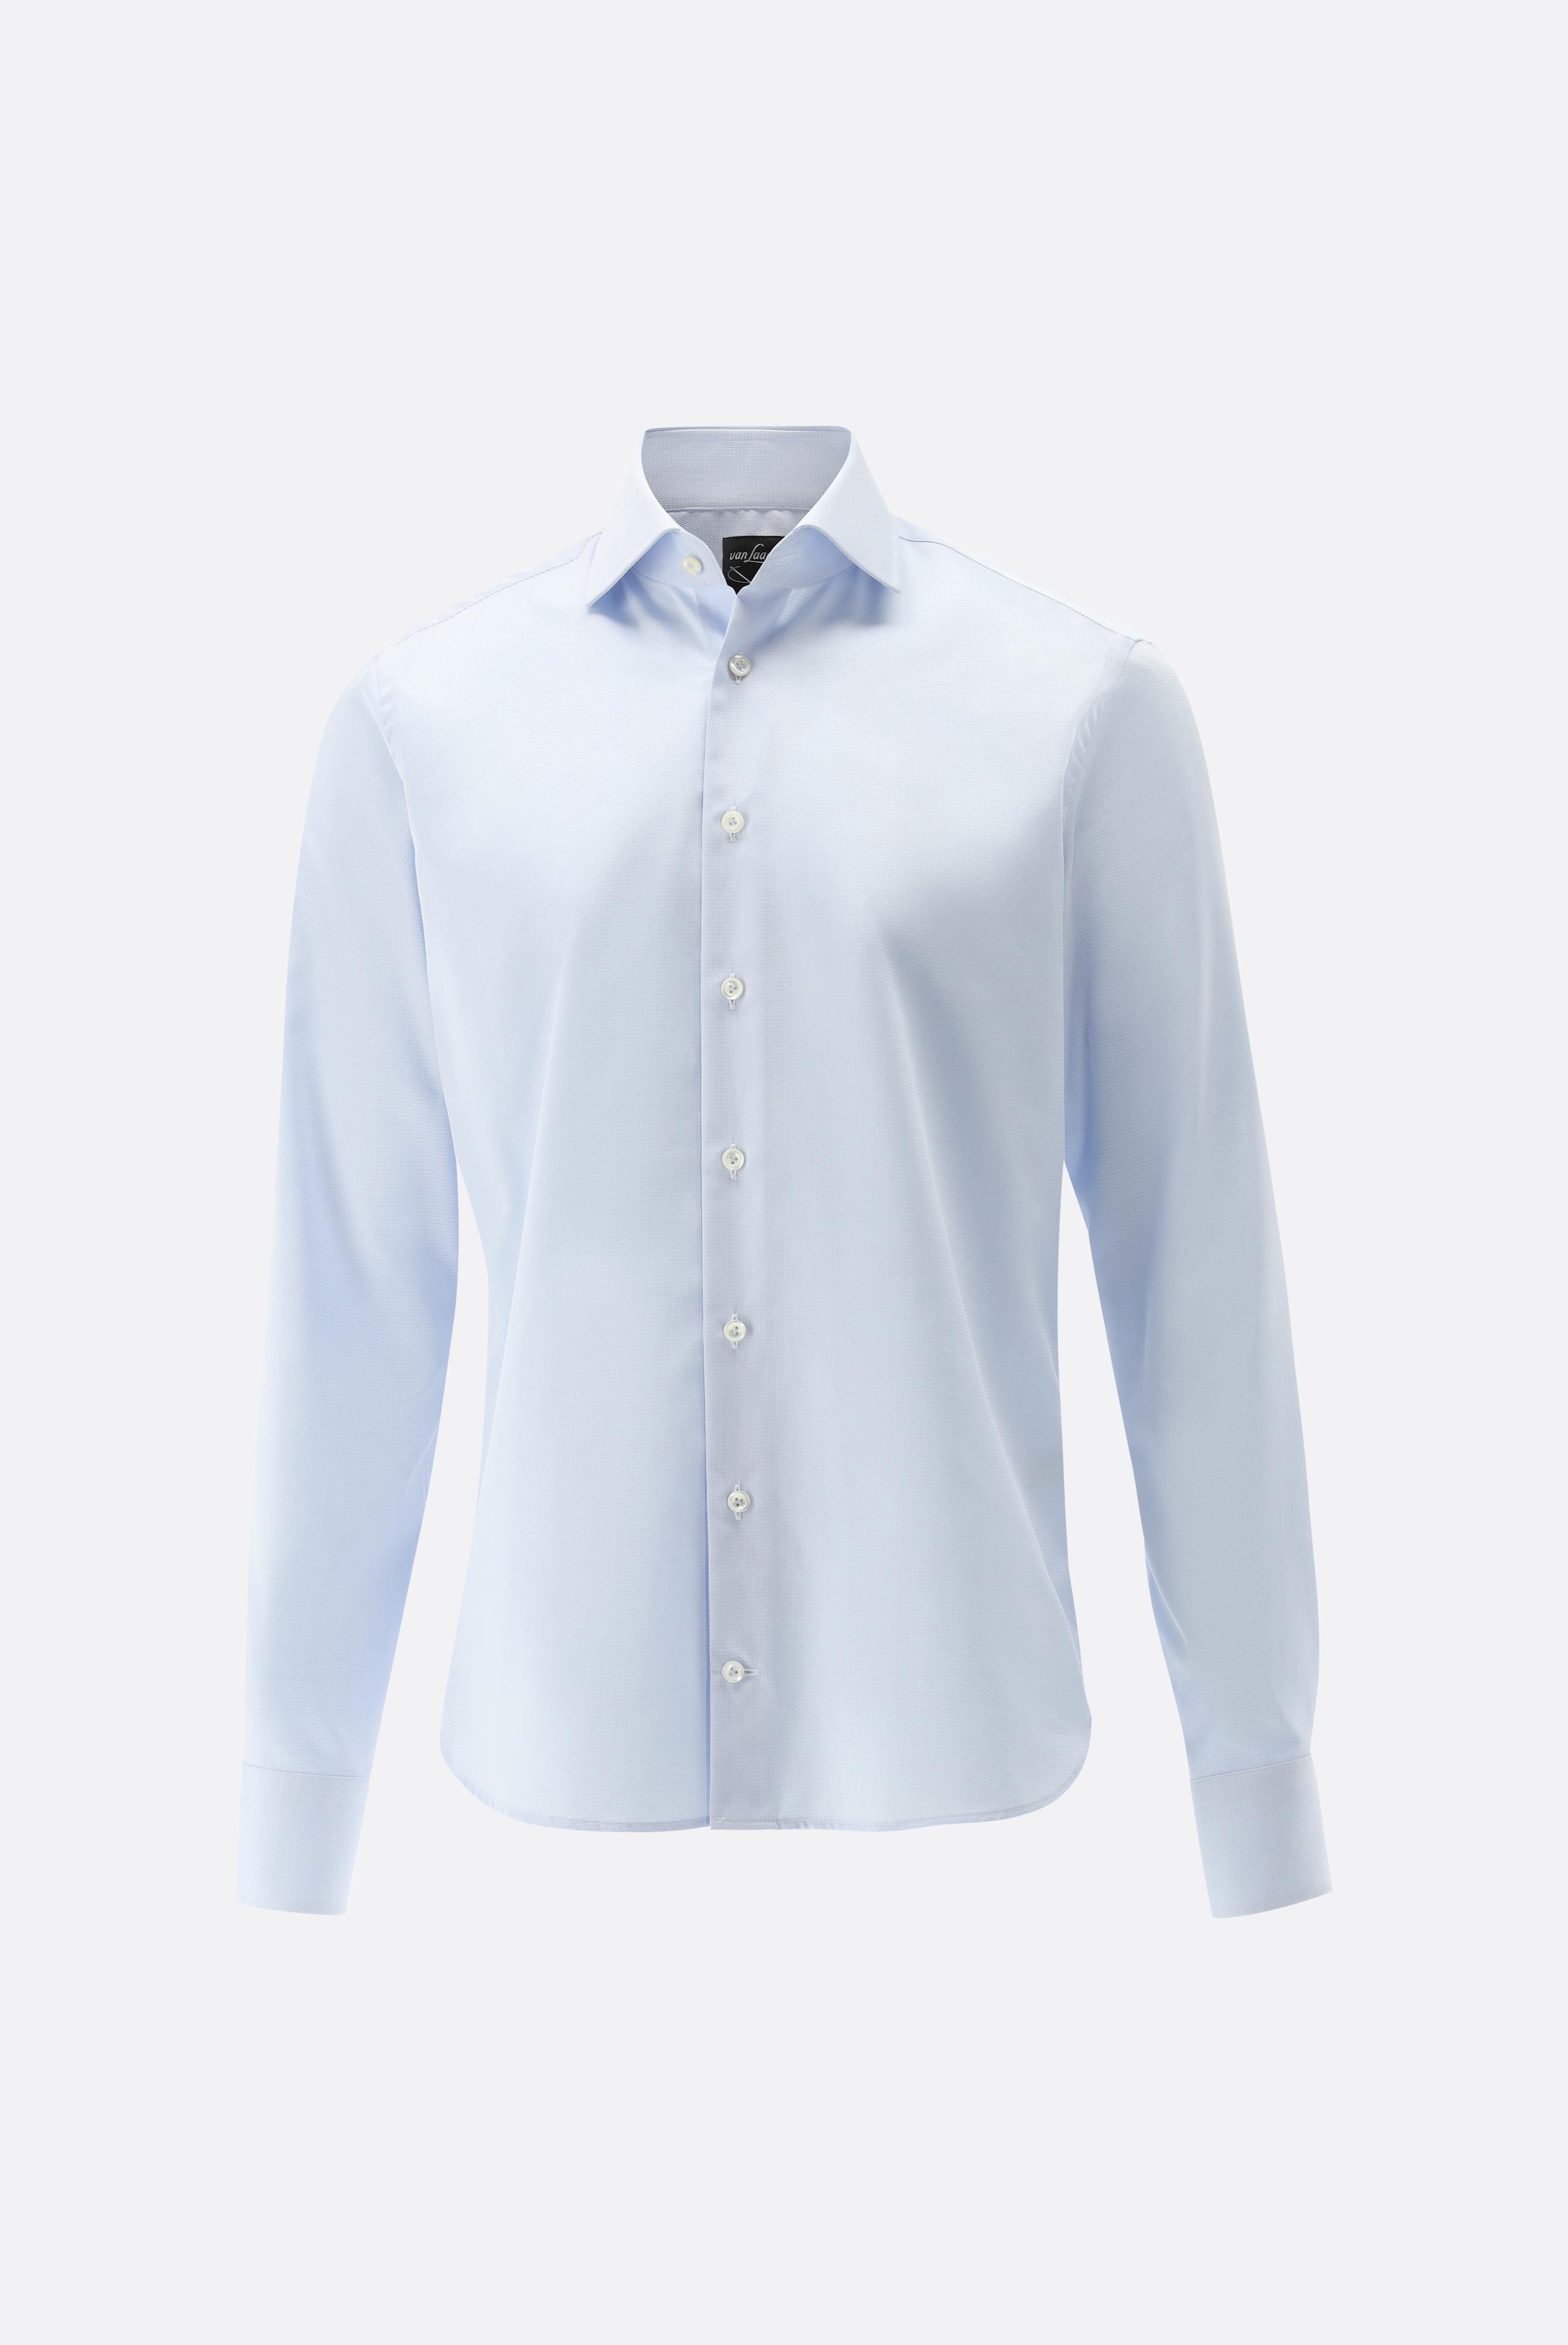 Bügelleichte Hemden+Bügelfreies Twil Hemd mit Struktur Slim Fit+20.2019.BQ.150301.720.44